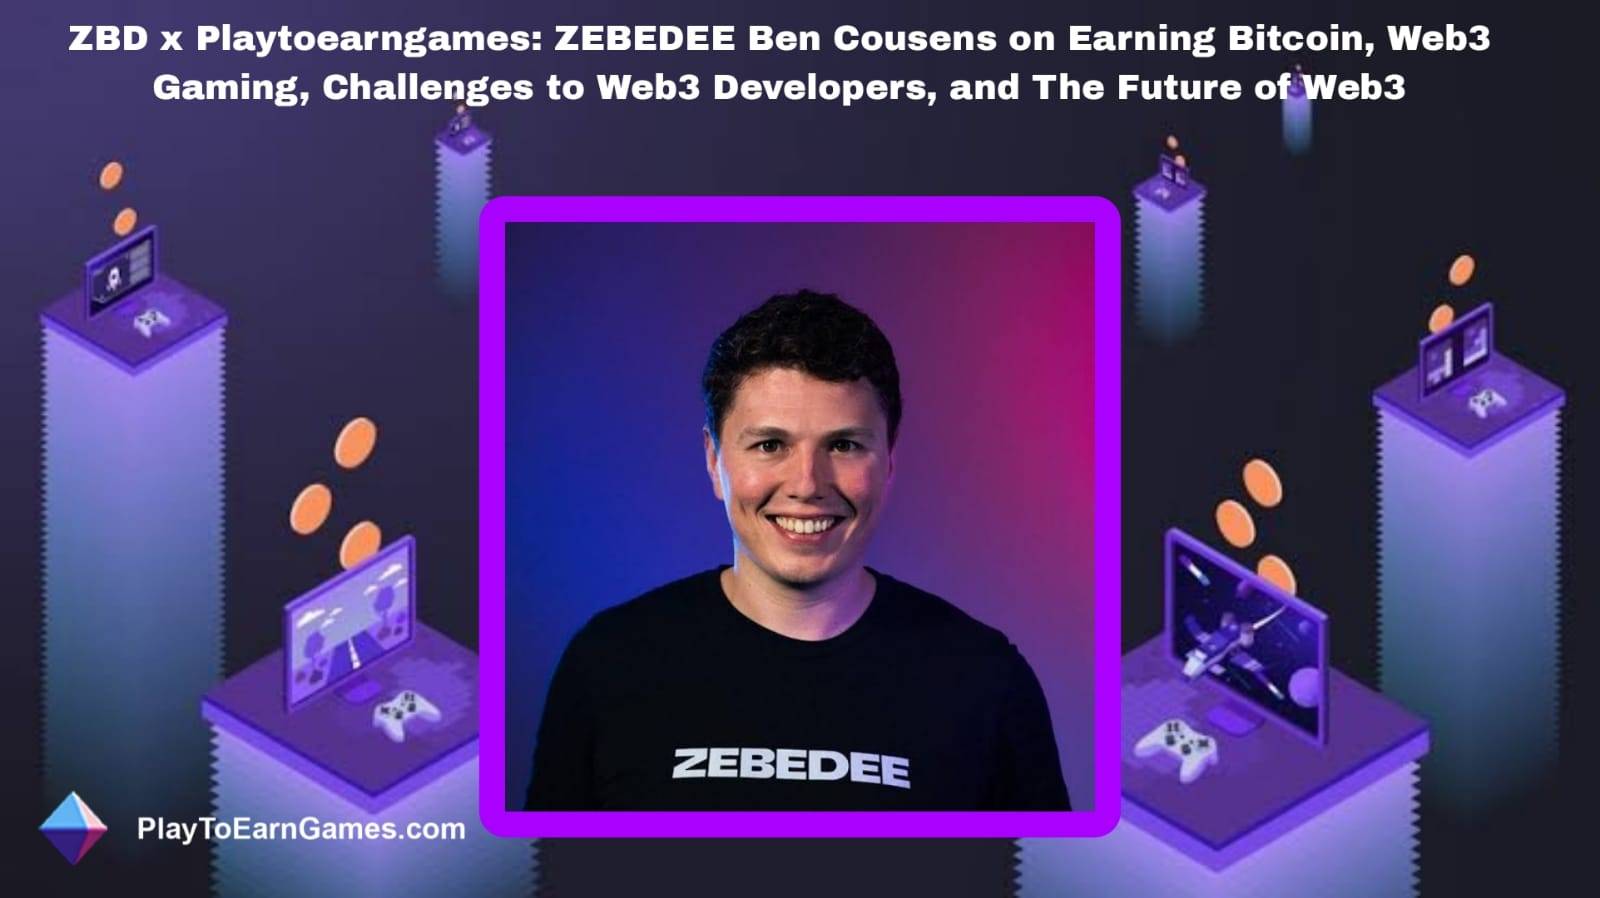 Recompensas, tendencias y entrevista de Bitcoin de ZBD con Ben Cousens